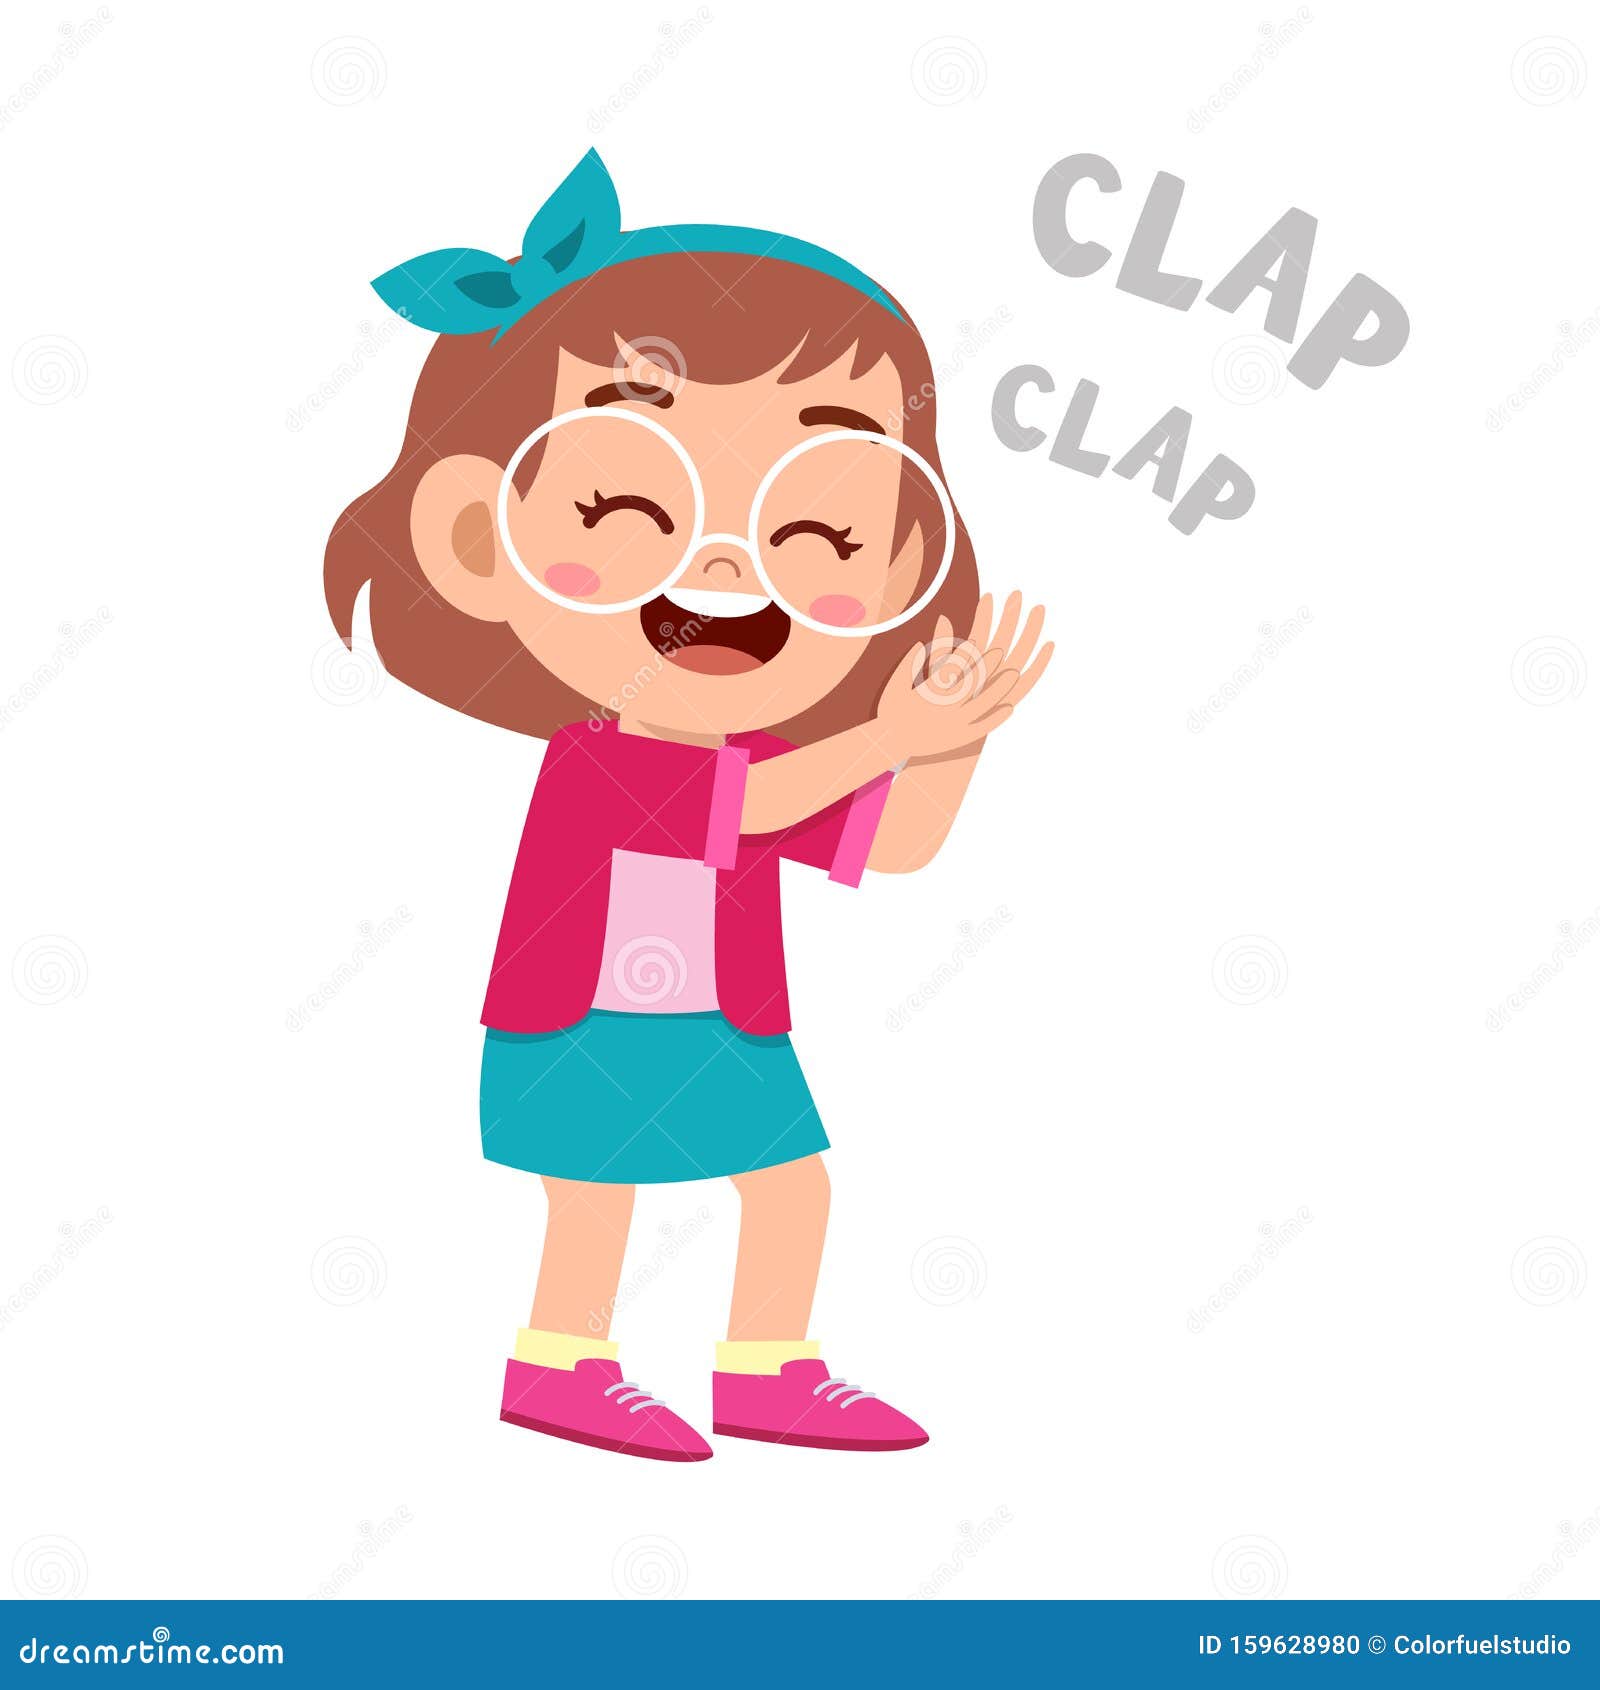 Clap Hands Cartoon Stock Illustrations – 1,103 Clap Hands Cartoon Stock  Illustrations, Vectors & Clipart - Dreamstime